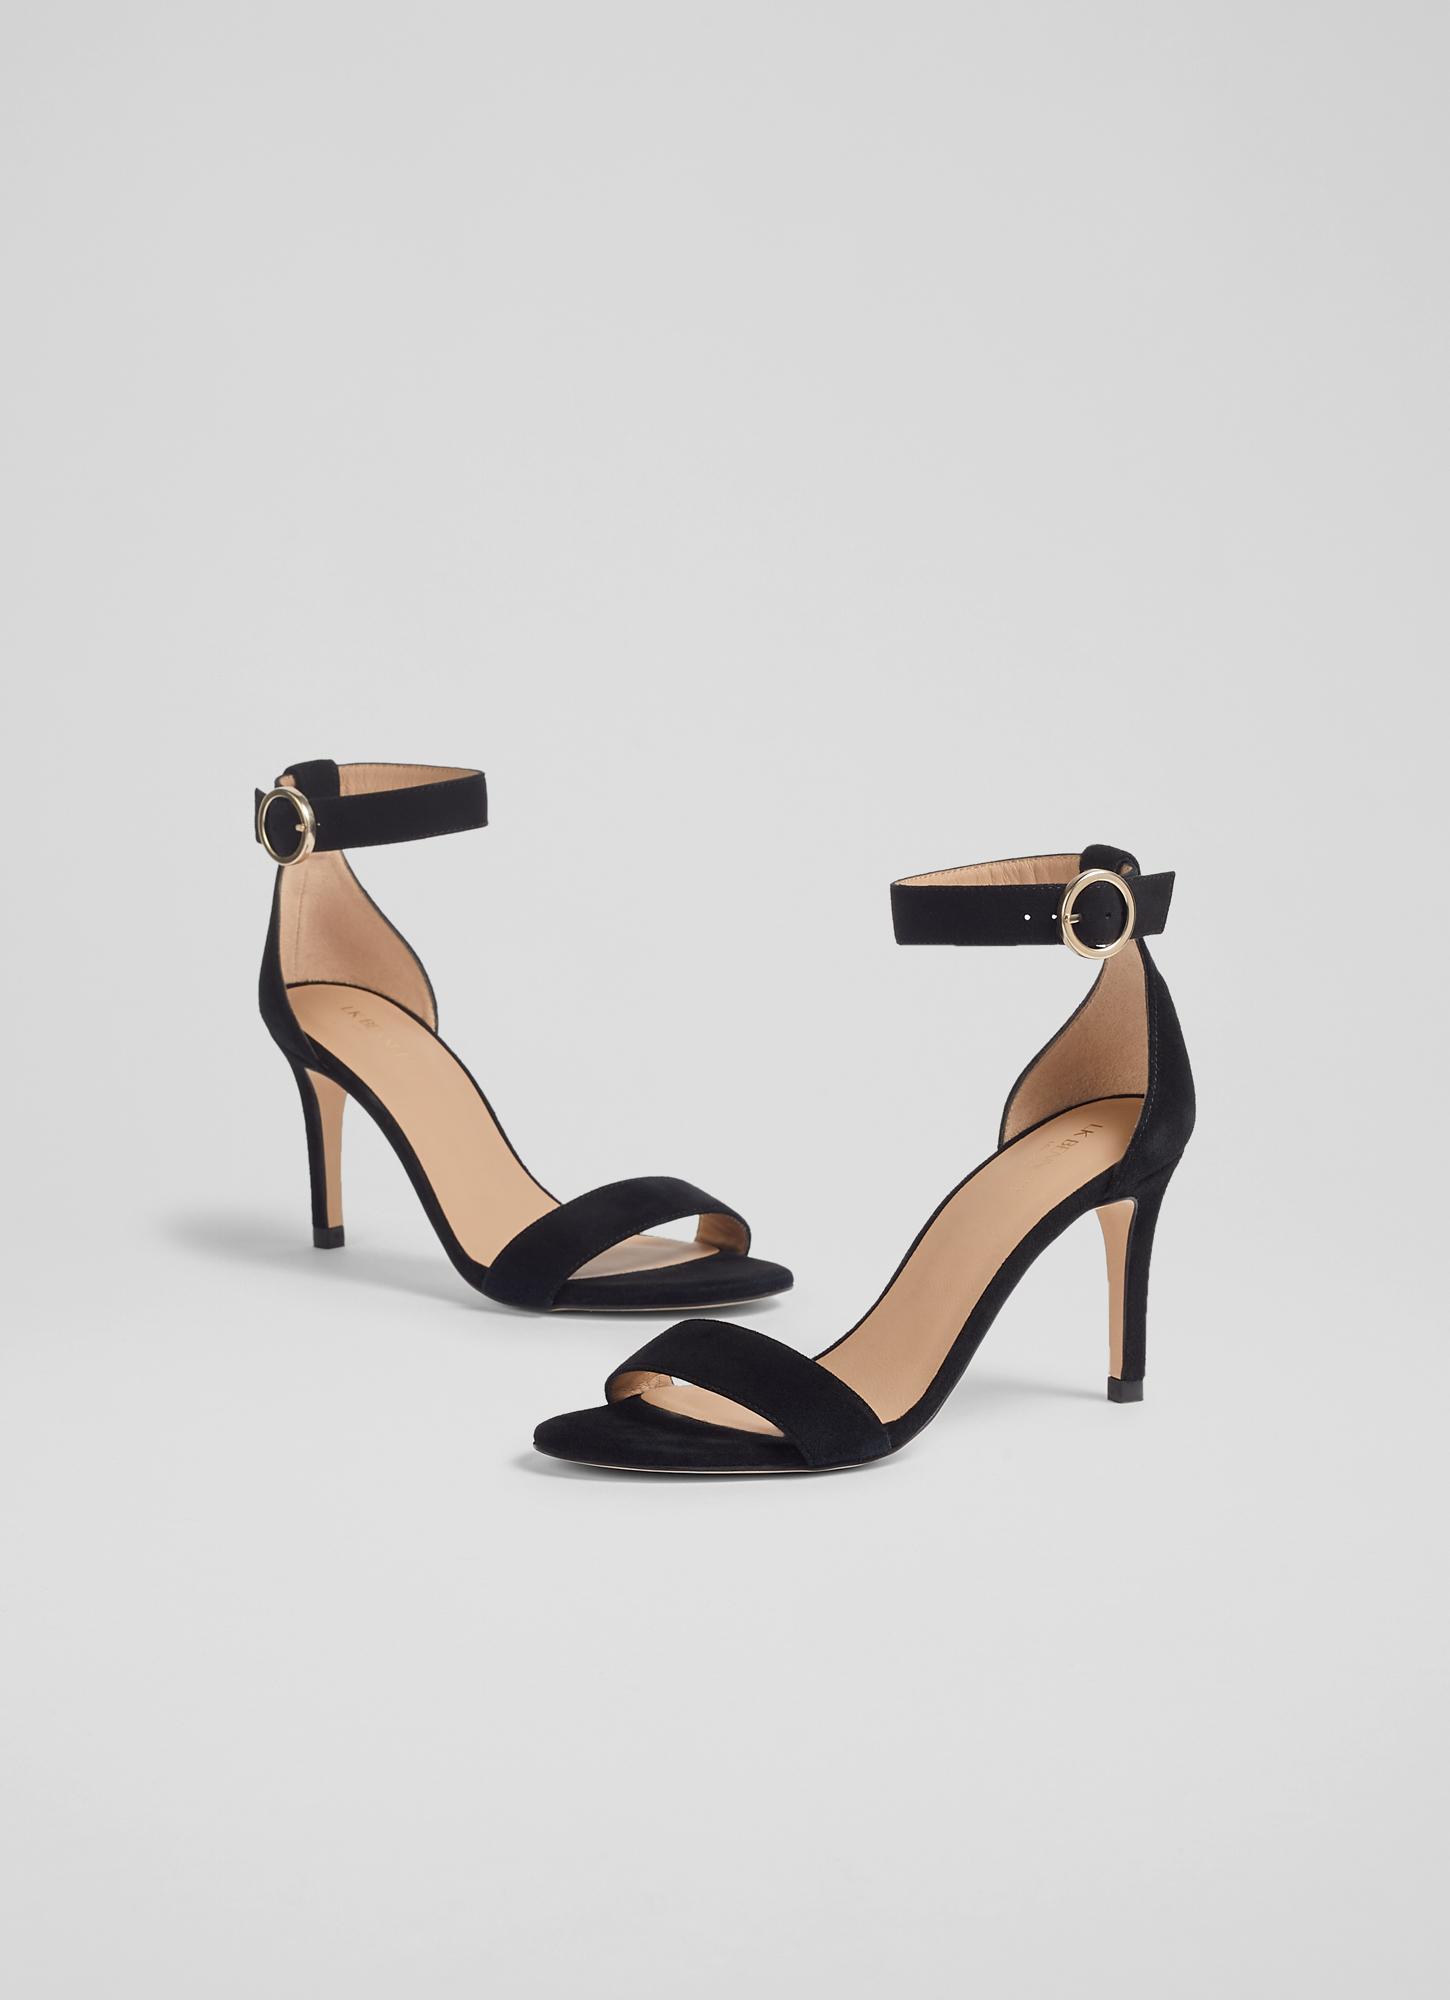 Lullie Black Suede Rhinestone Ankle Strap Pointed-Toe Pumps | Heels, Black  heels, Bow heels